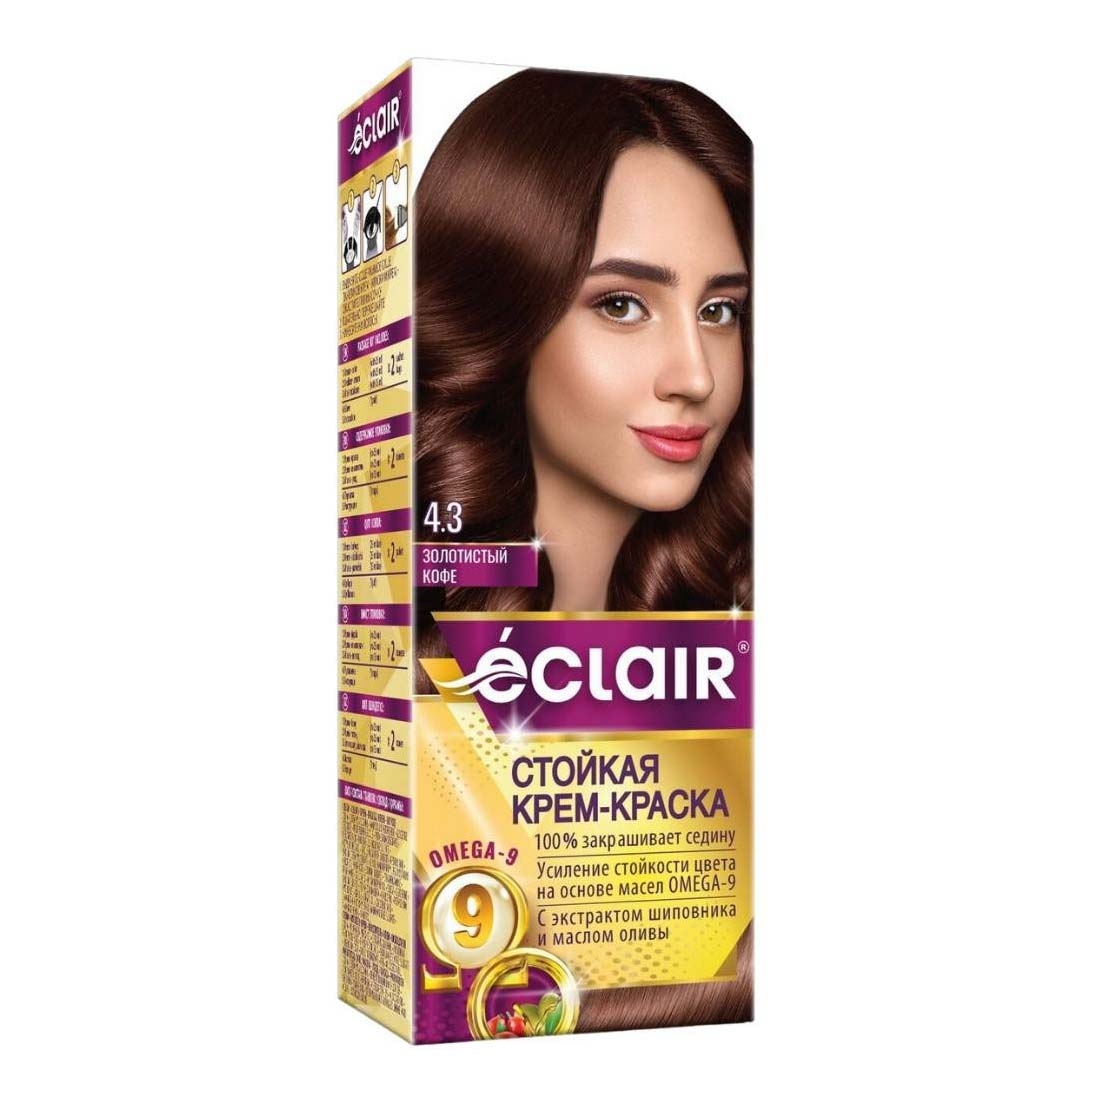 Стойкая крем-краска для волос «еclair» «Omega-9»